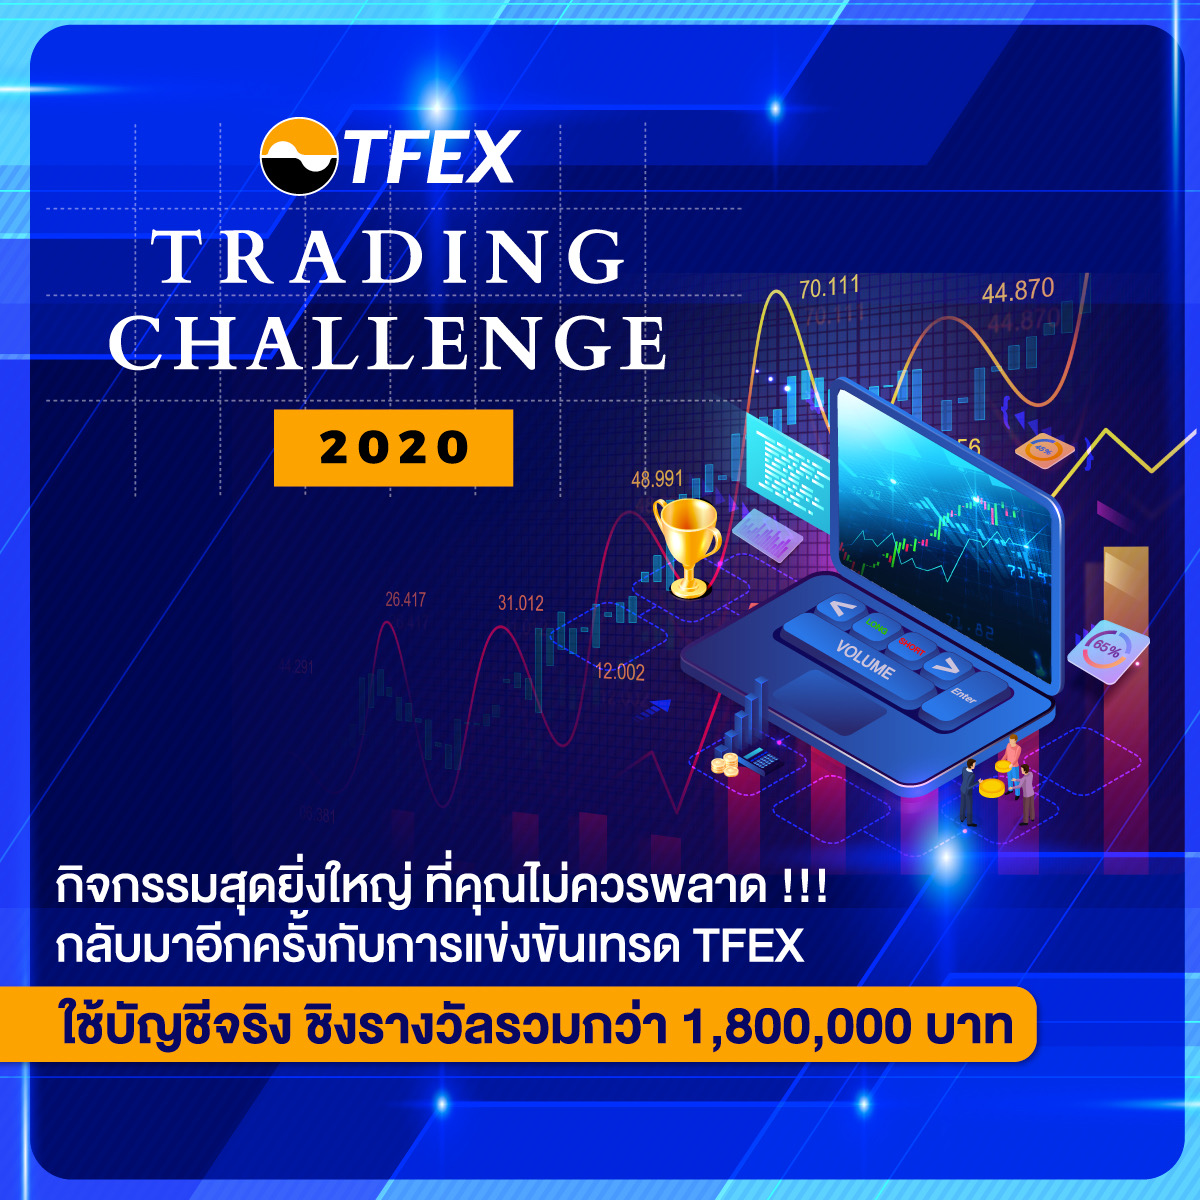 ชวนมือใหม่ & สายเทรด แข่ง TFEX Trading Challenge 2020 ชิงรางวัลรวมกว่า 1.8 ล้านบาท